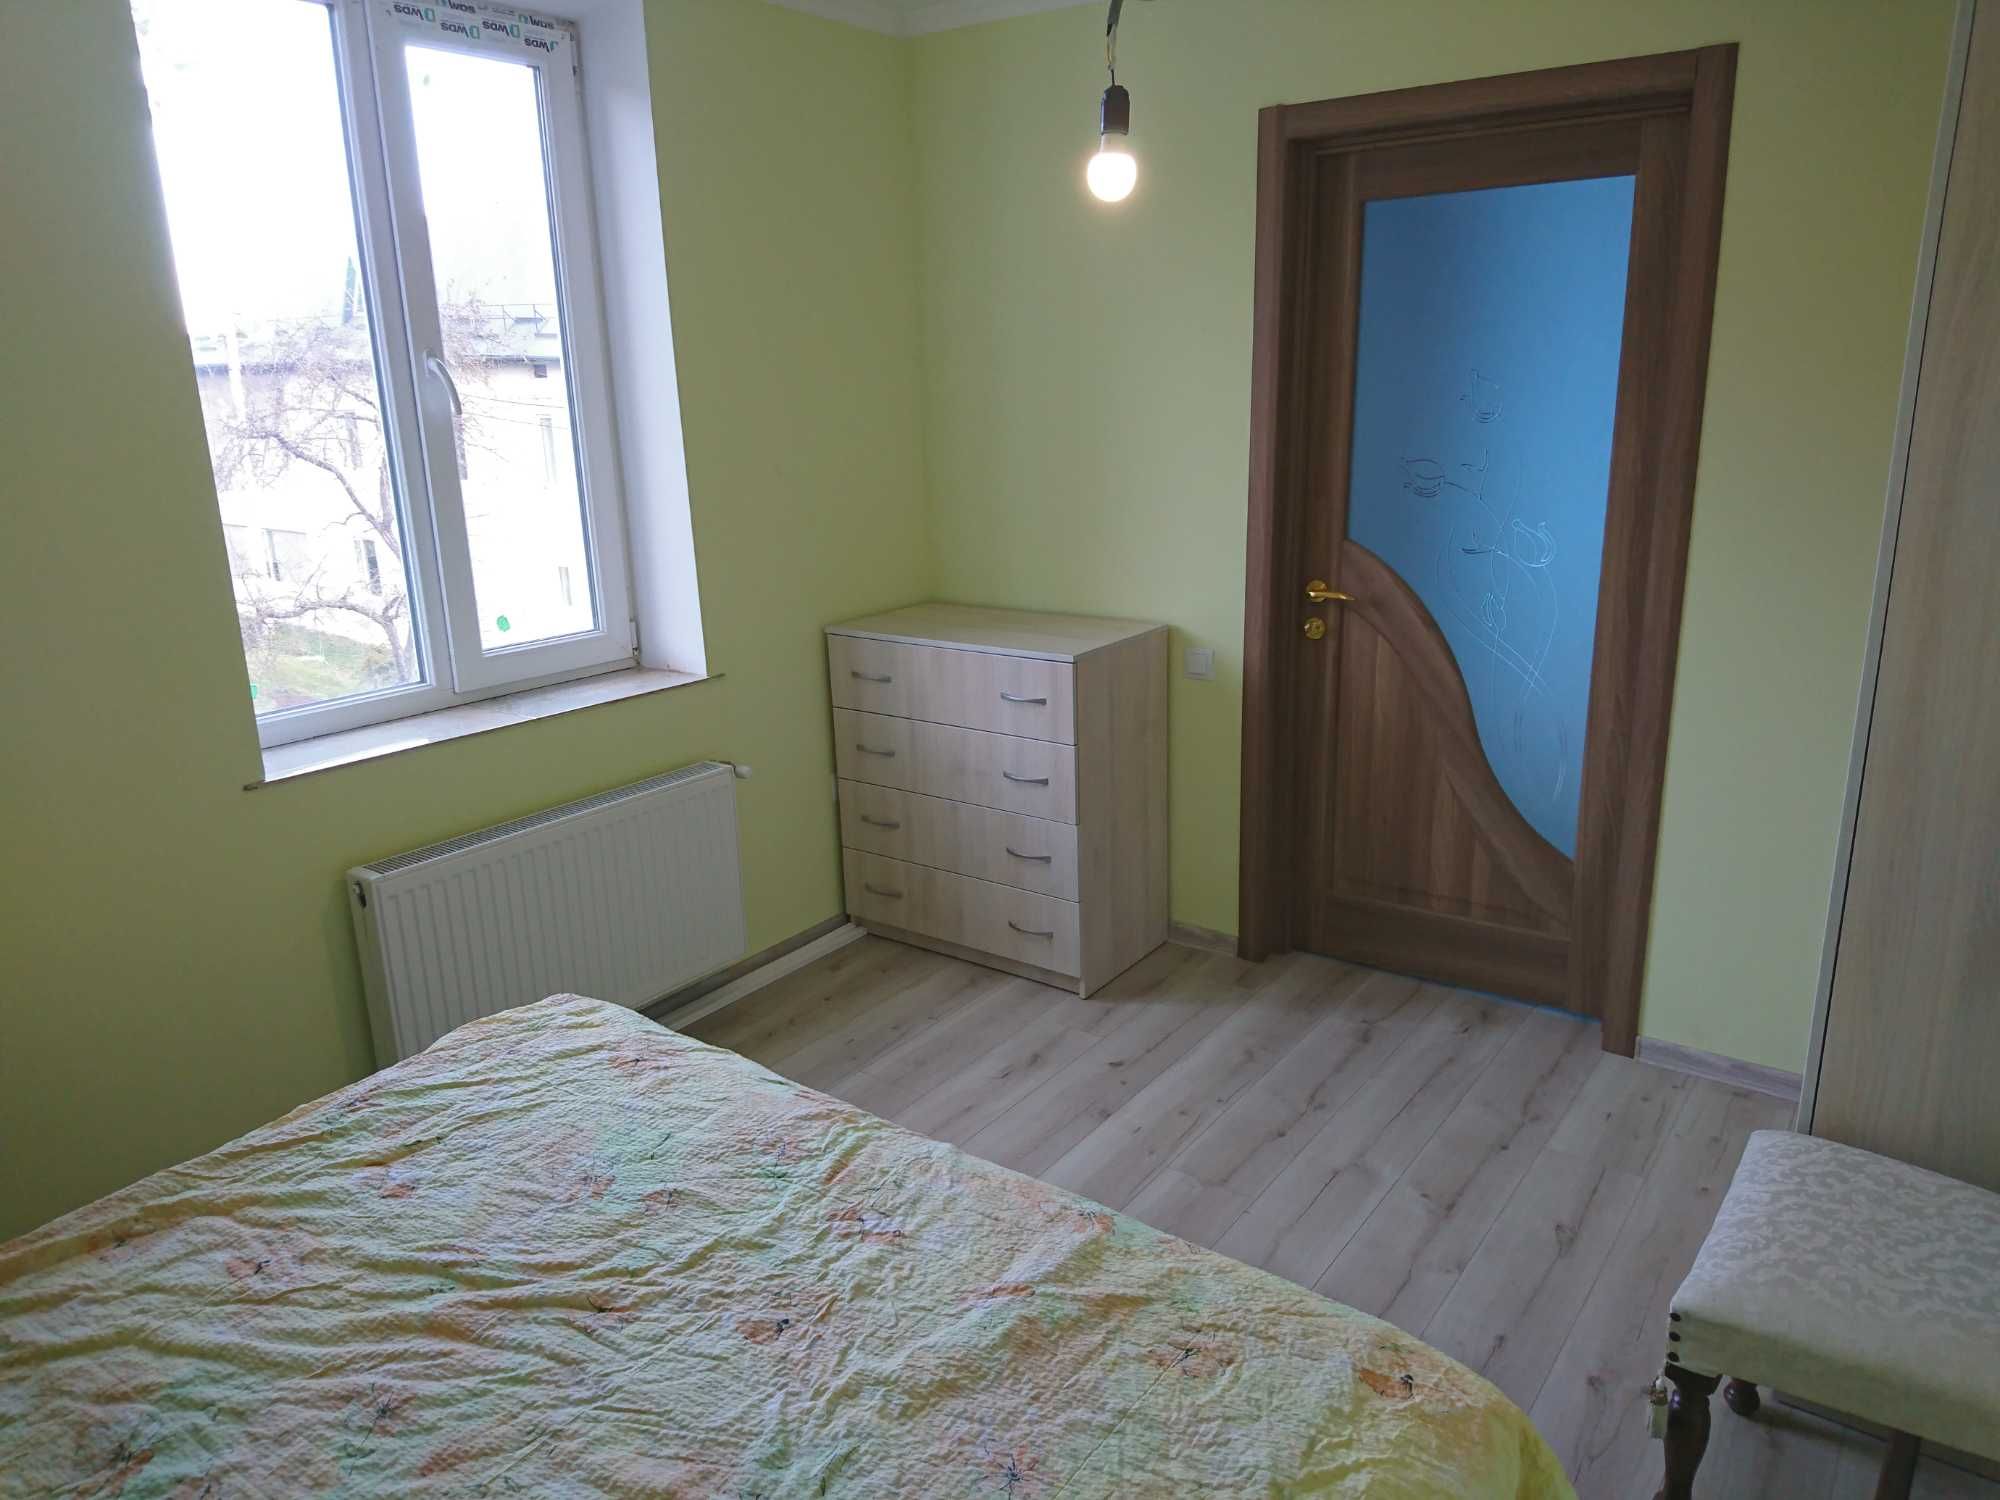 Здається 2 кімнати 20 м² і 15 м², кухня 17 м² смт. Петрики, Тернопіль.